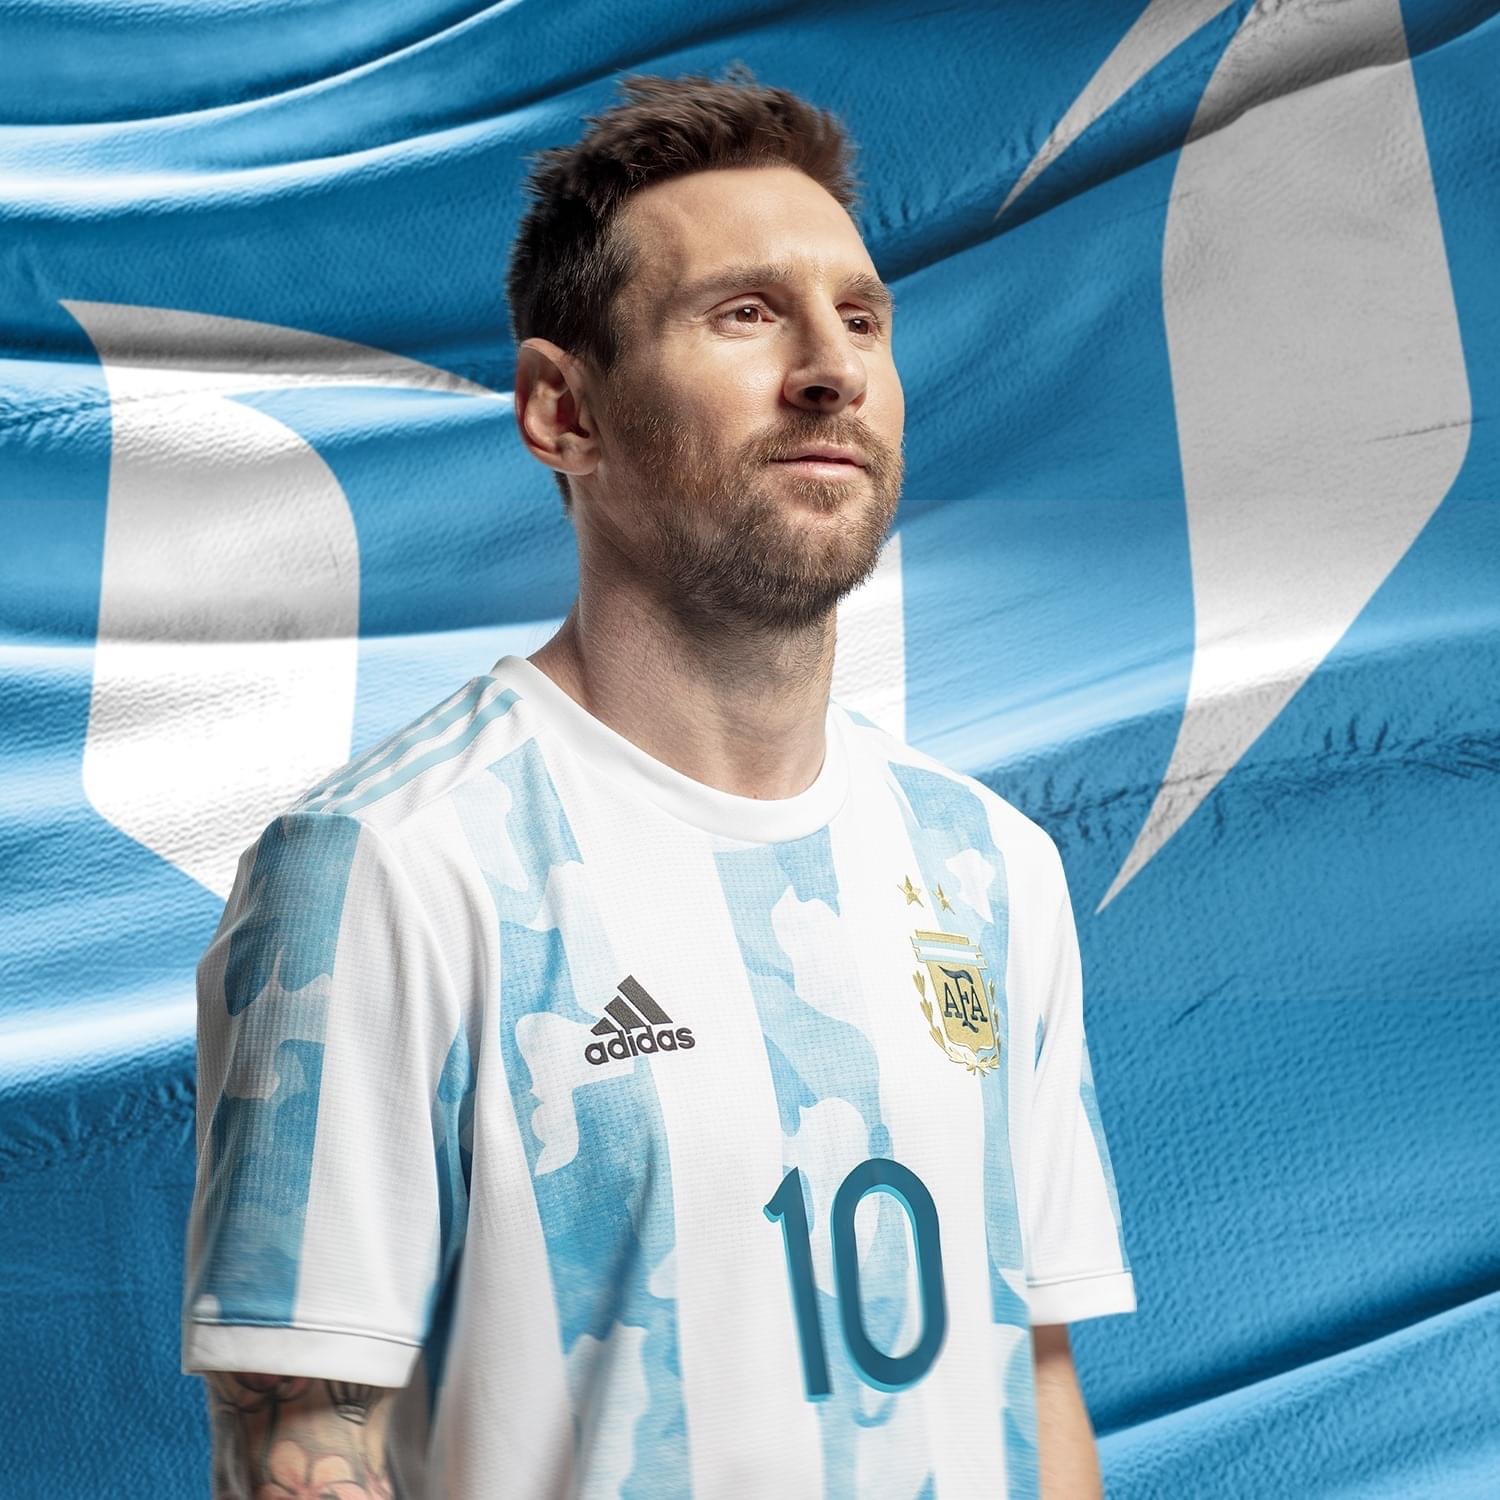 Trong bức ảnh này, Messi tỏa sáng giữa đám đông người hâm mộ đặt chân đến Qatar để cổ vũ cho đội tuyển Argentina. Với chiếc áo số 10 trên người, Messi đã cho thấy sự quan trọng và ánh sáng để giúp đội tuyển của mình giành chiến thắng. Hãy xem bức ảnh này để hiểu thêm về tinh thần đấu tranh đầy nghị lực của Messi.